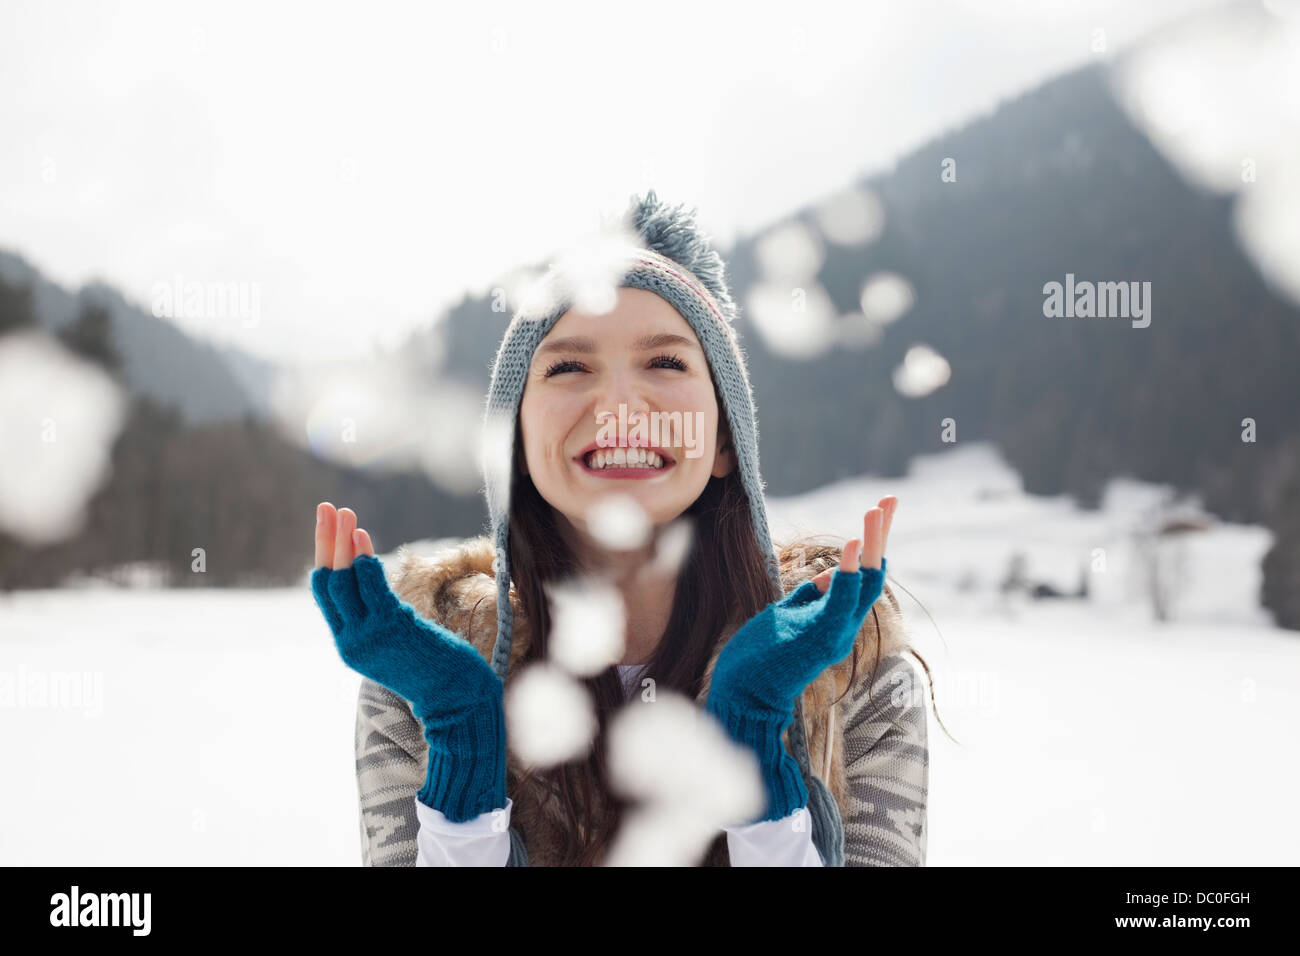 Happy woman enjoying falling snow in field Stock Photo